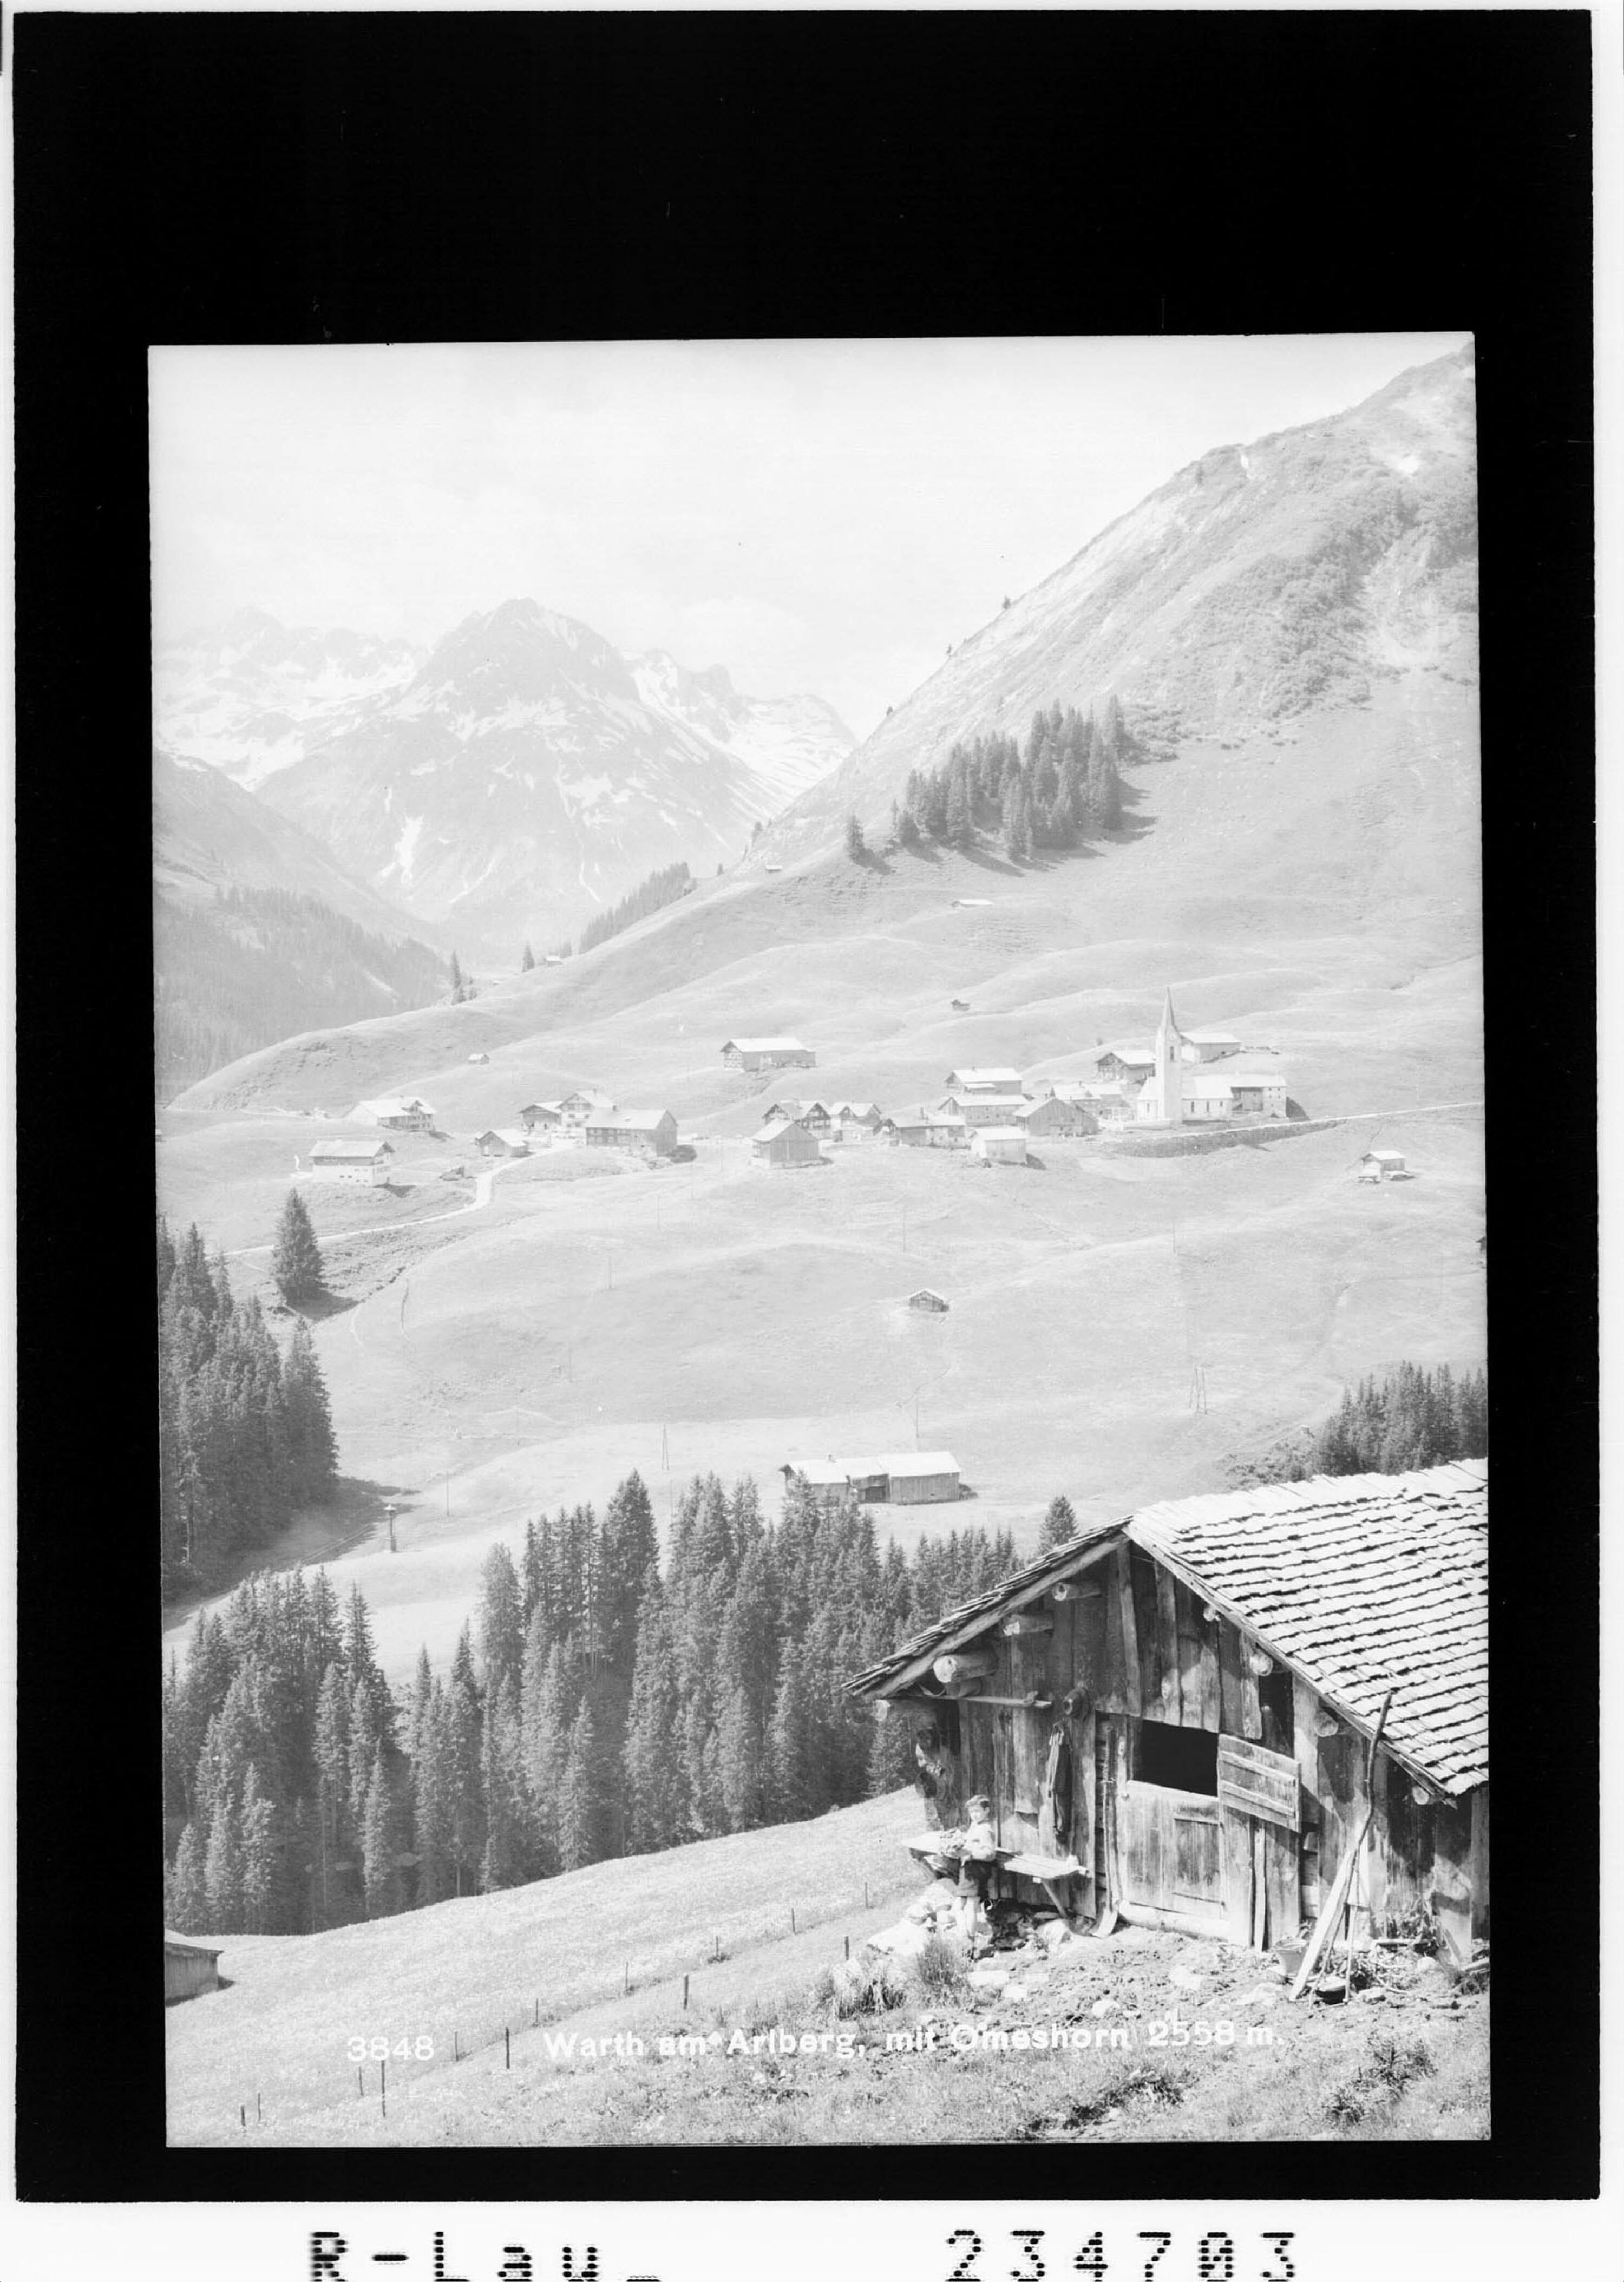 Warth am Arlberg mit Omeshorn 2558 m></div>


    <hr>
    <div class=